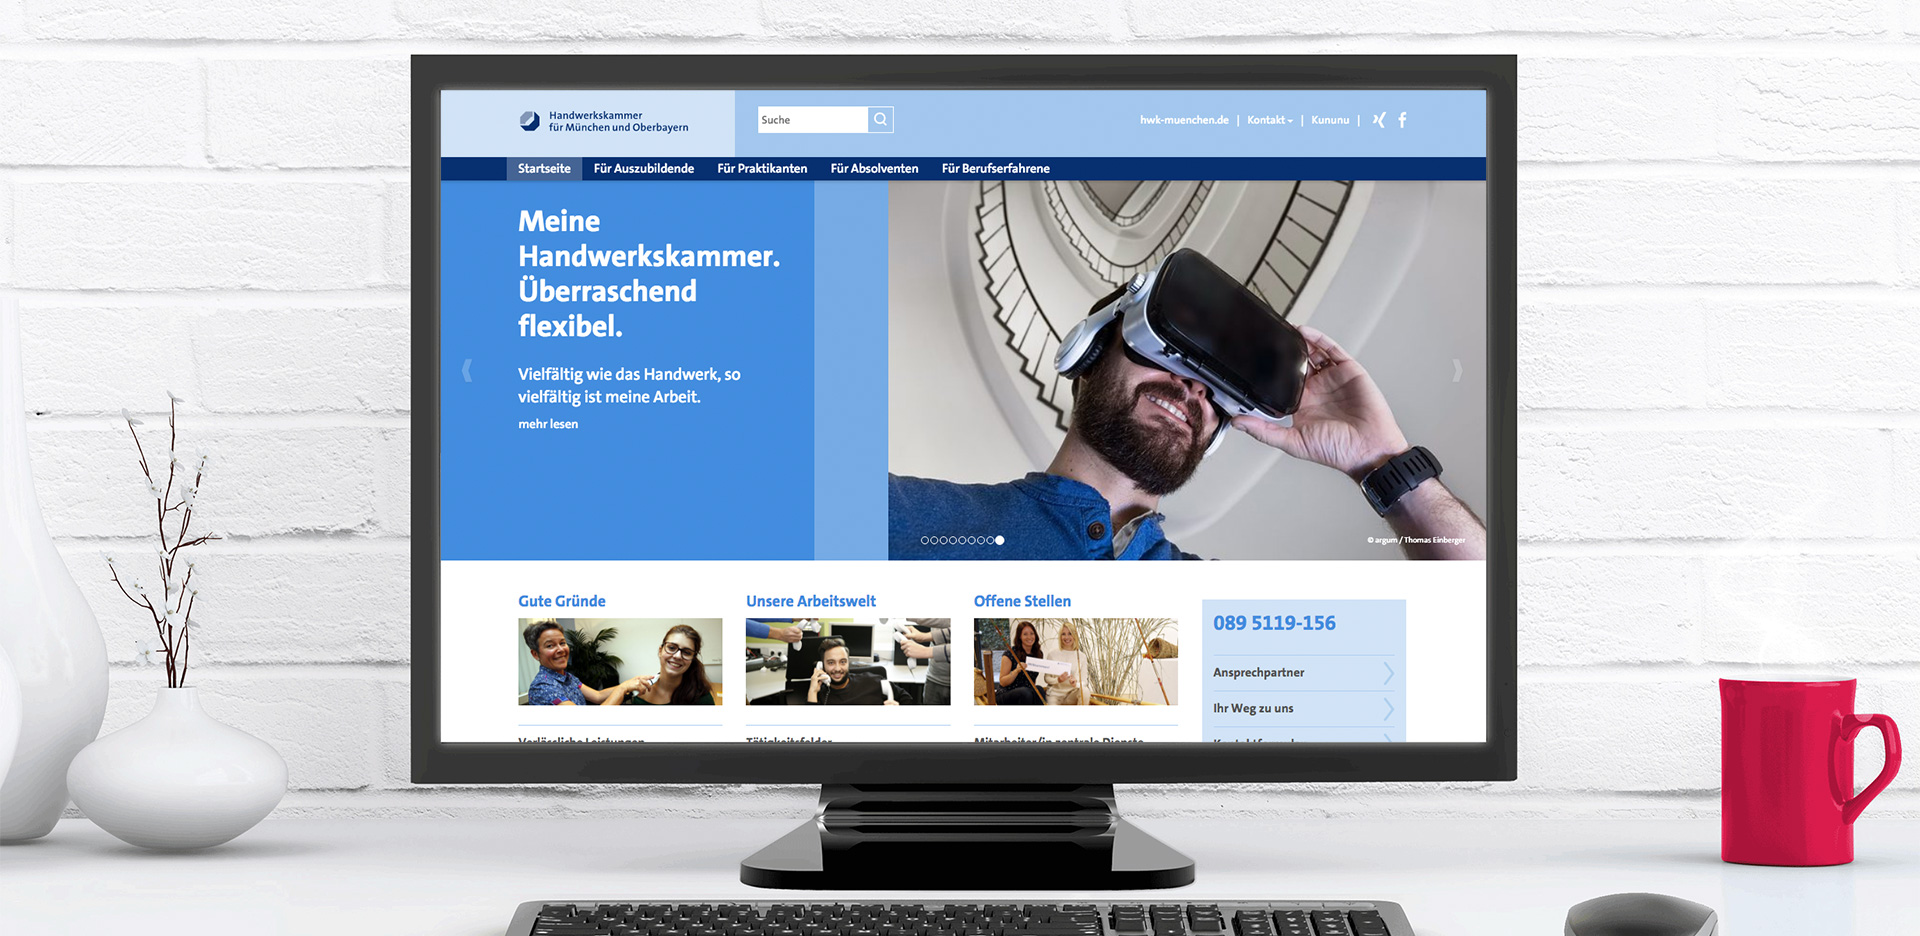 Die neue Employer Branding Website der Handwerkskammer für München und Oberbayern.